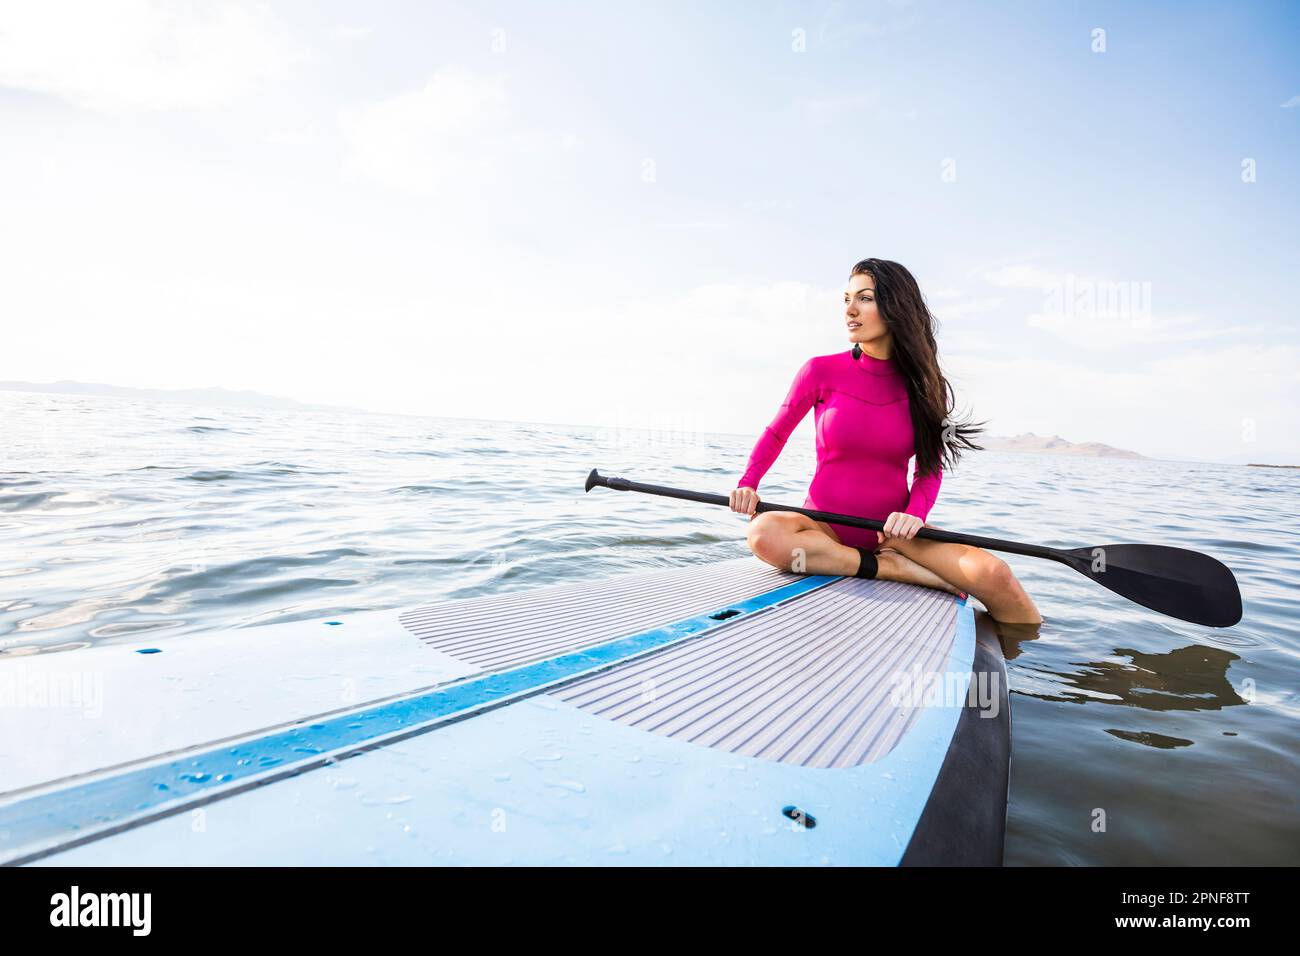 Woman sitting on paddleboard Stock Photo